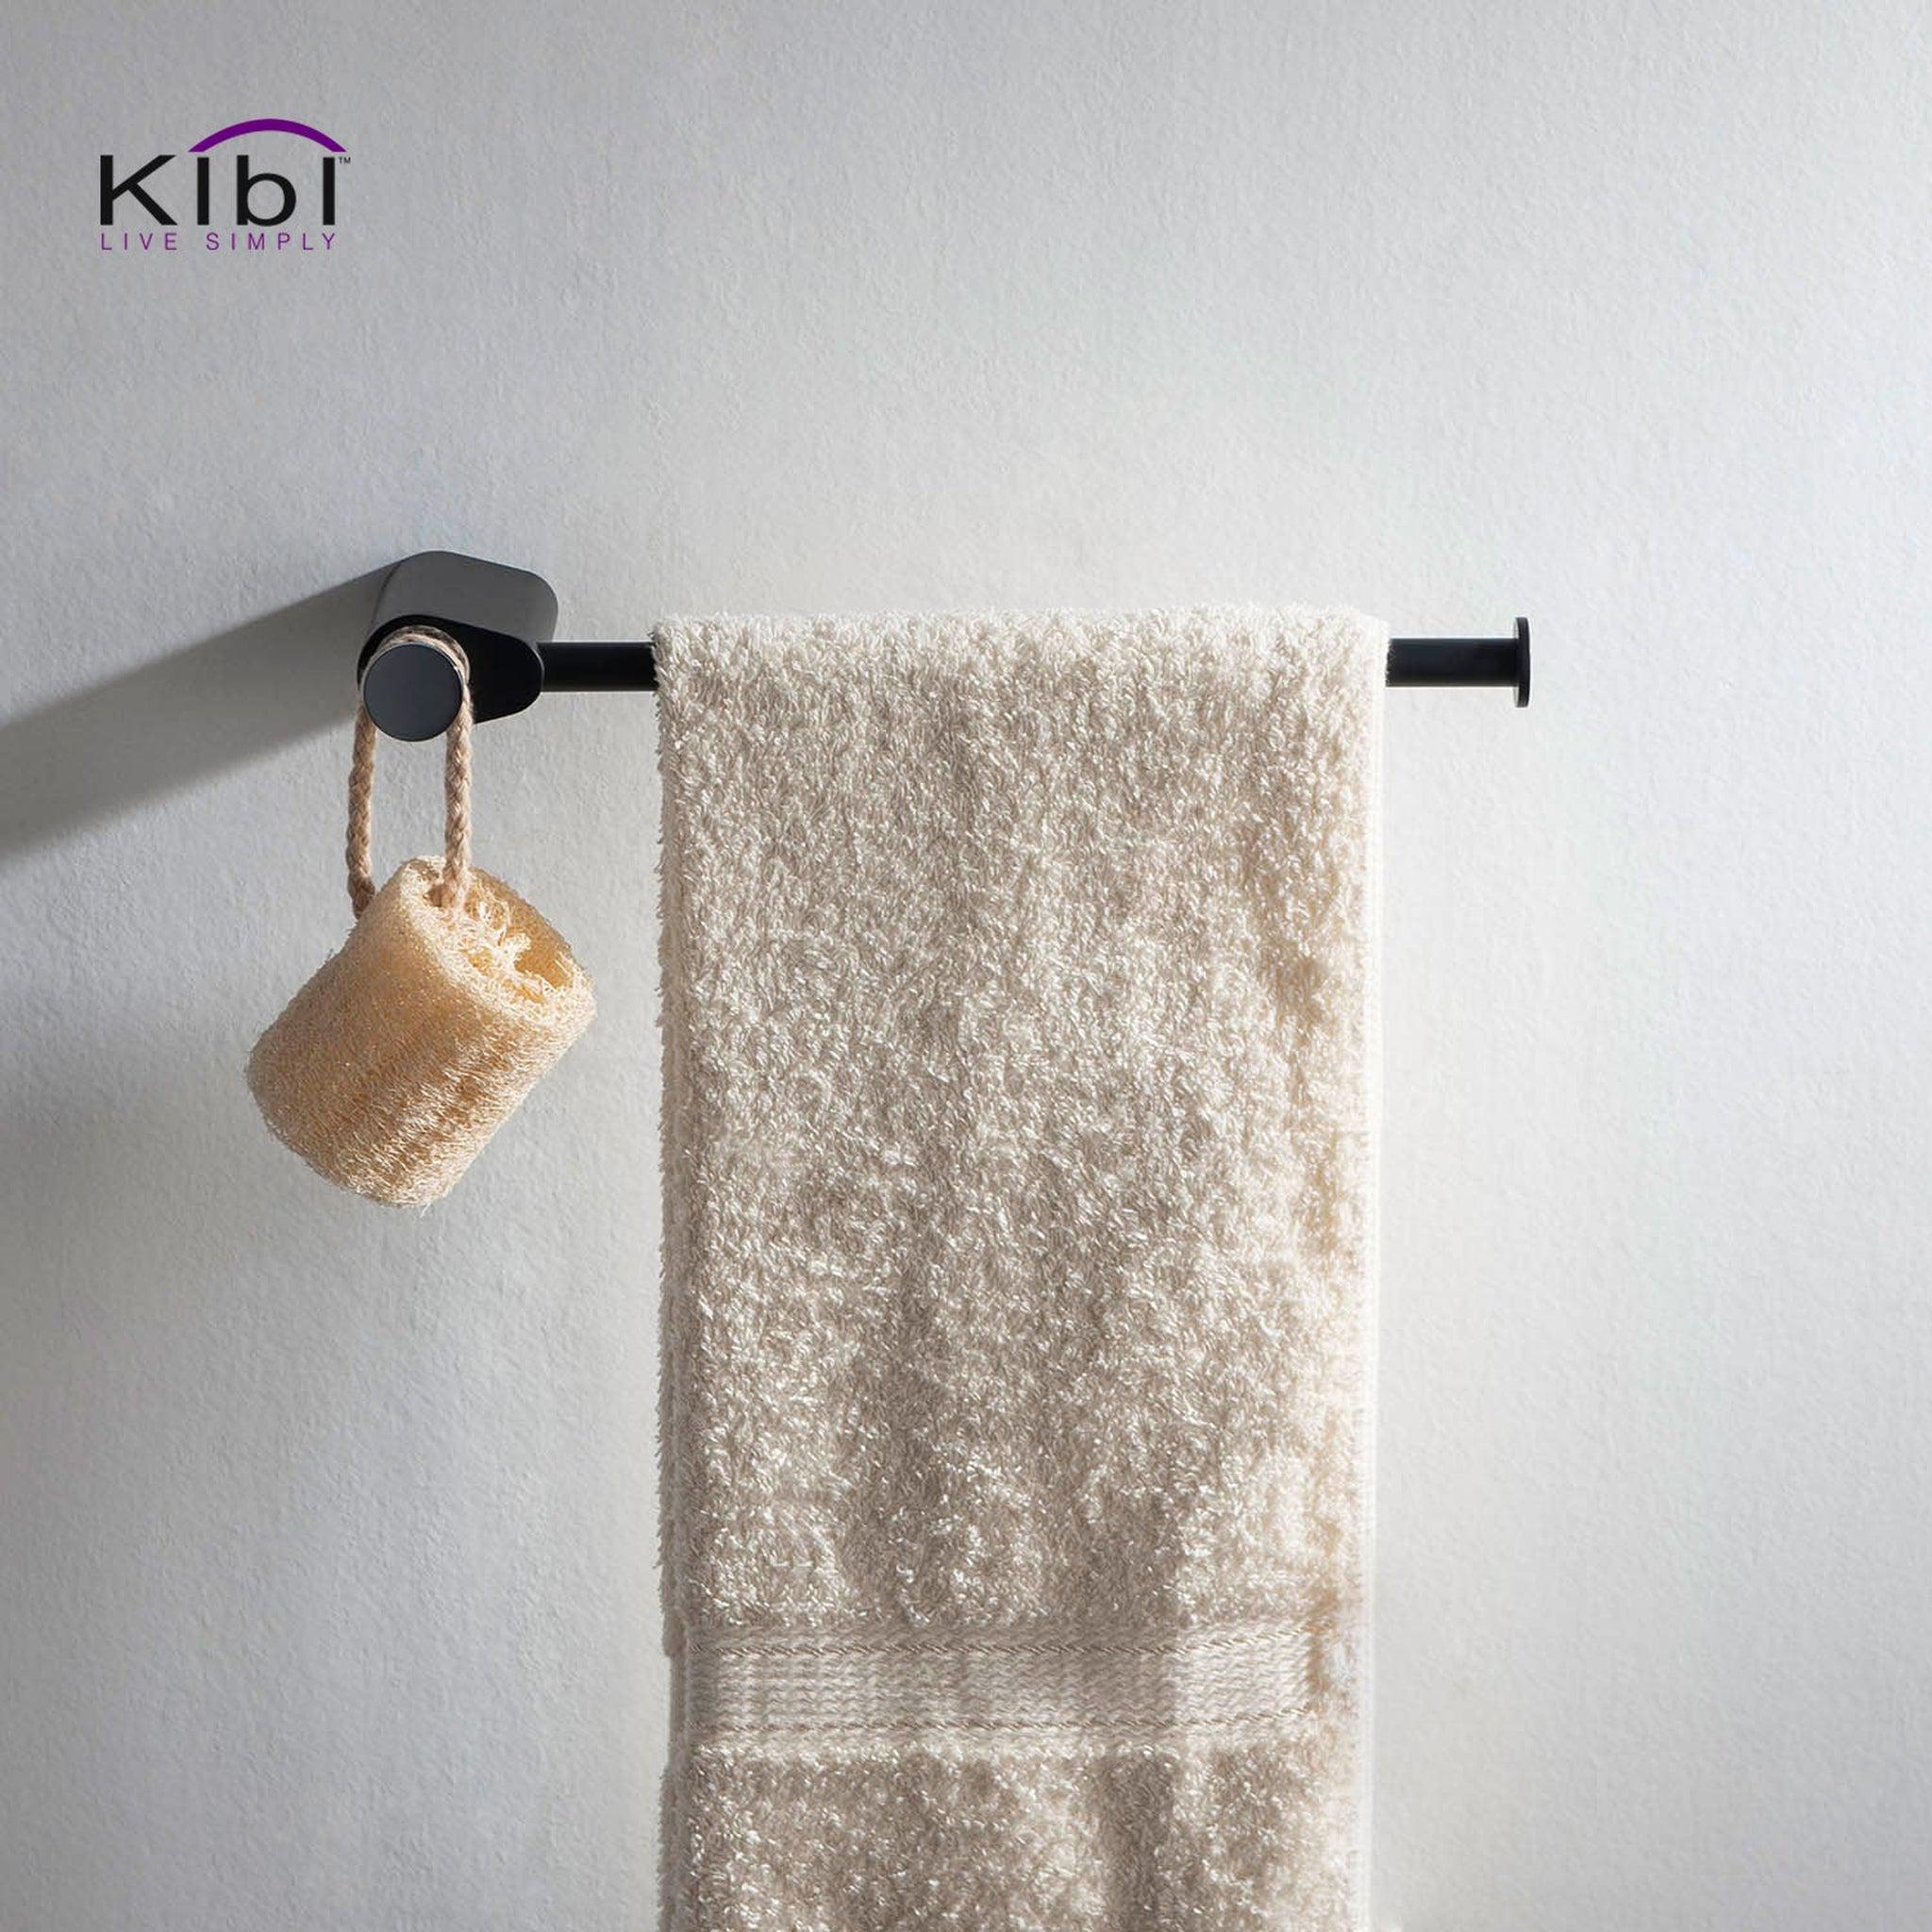 KIBI, KIBI Volcano Brass Bathroom Towel Ring in Chrome Black Finish